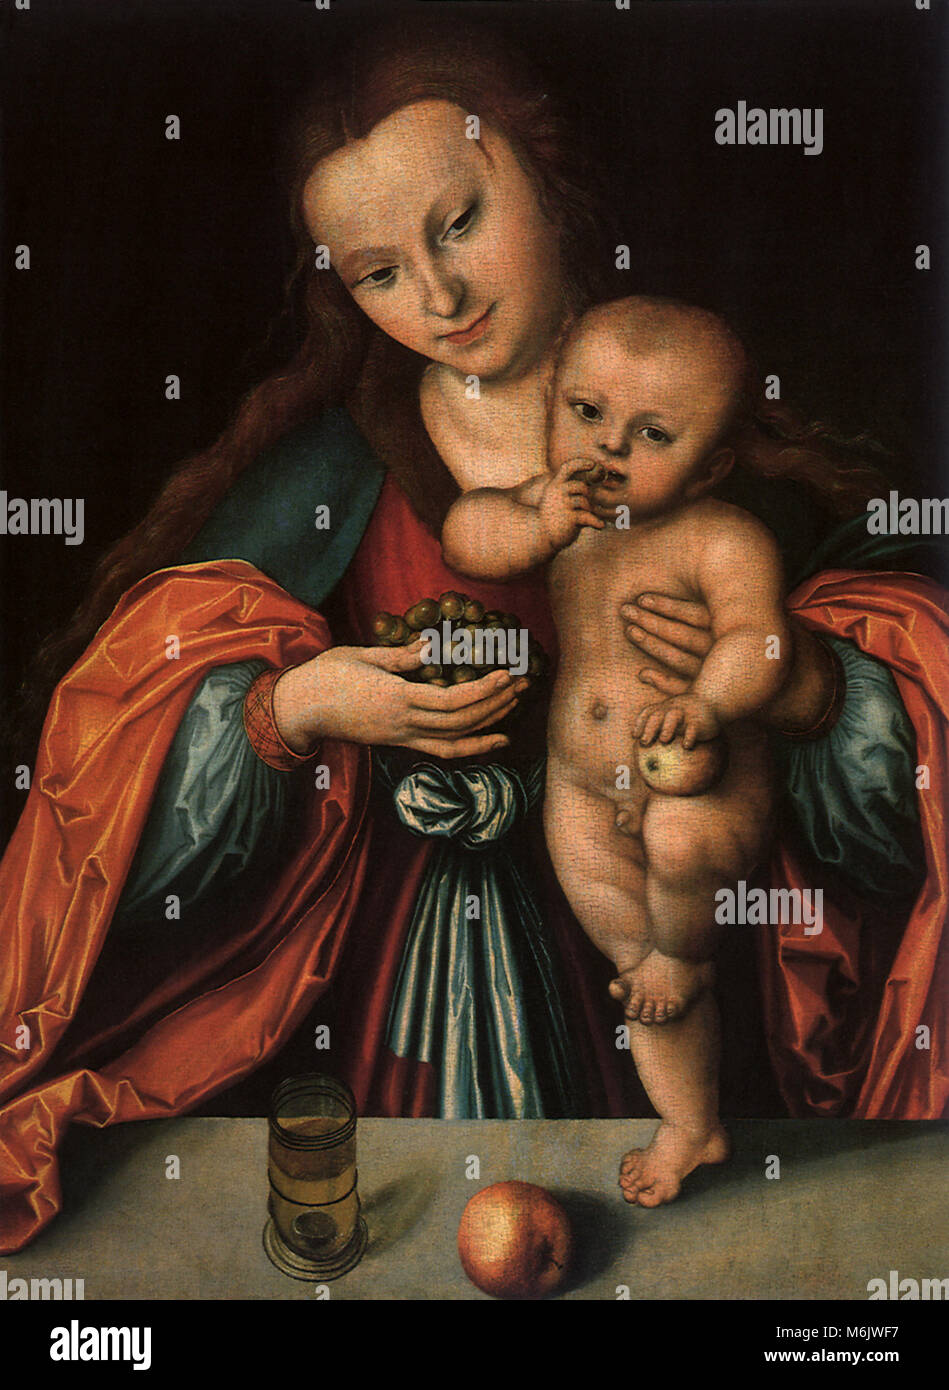 La Vergine e il Bambino, Cranach, Lucas il sambuco, 1510. Foto Stock